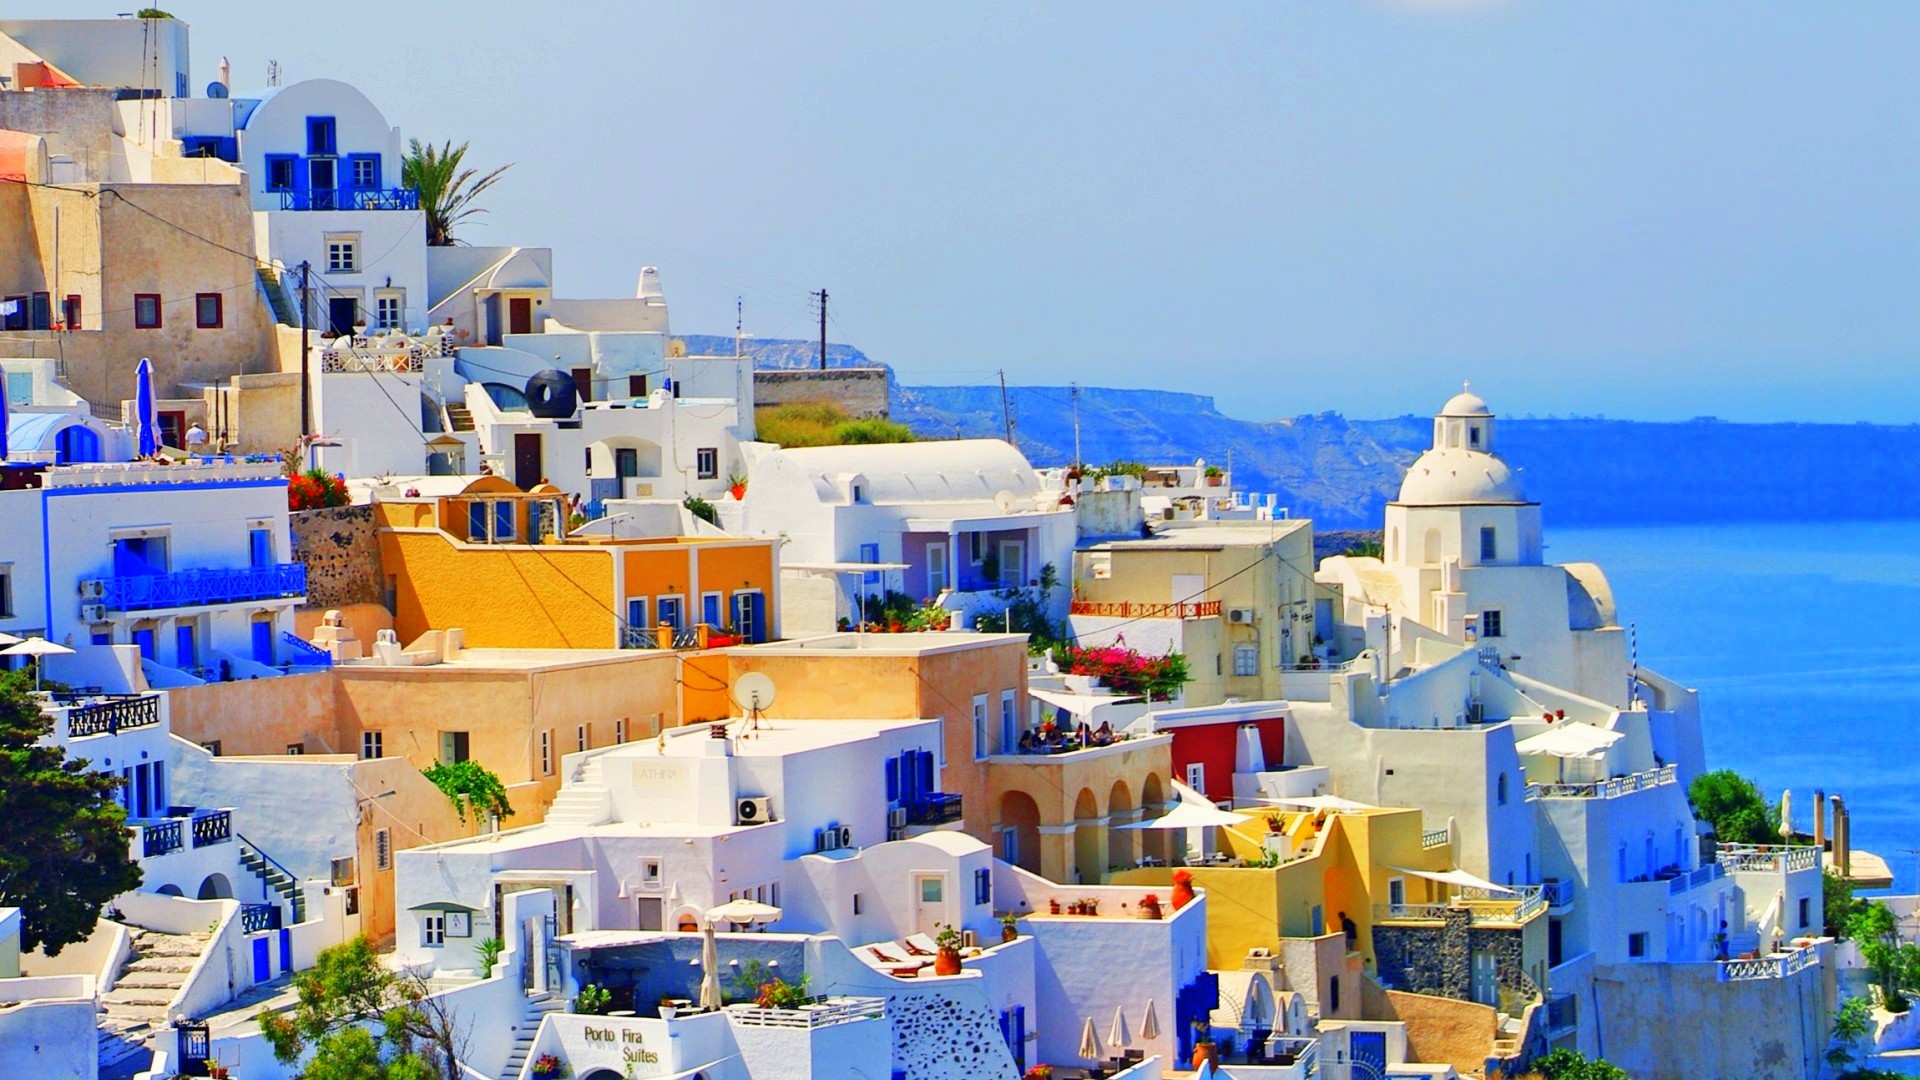 grecia fondo de pantalla,azul,pueblo,propiedad,turismo,barrio